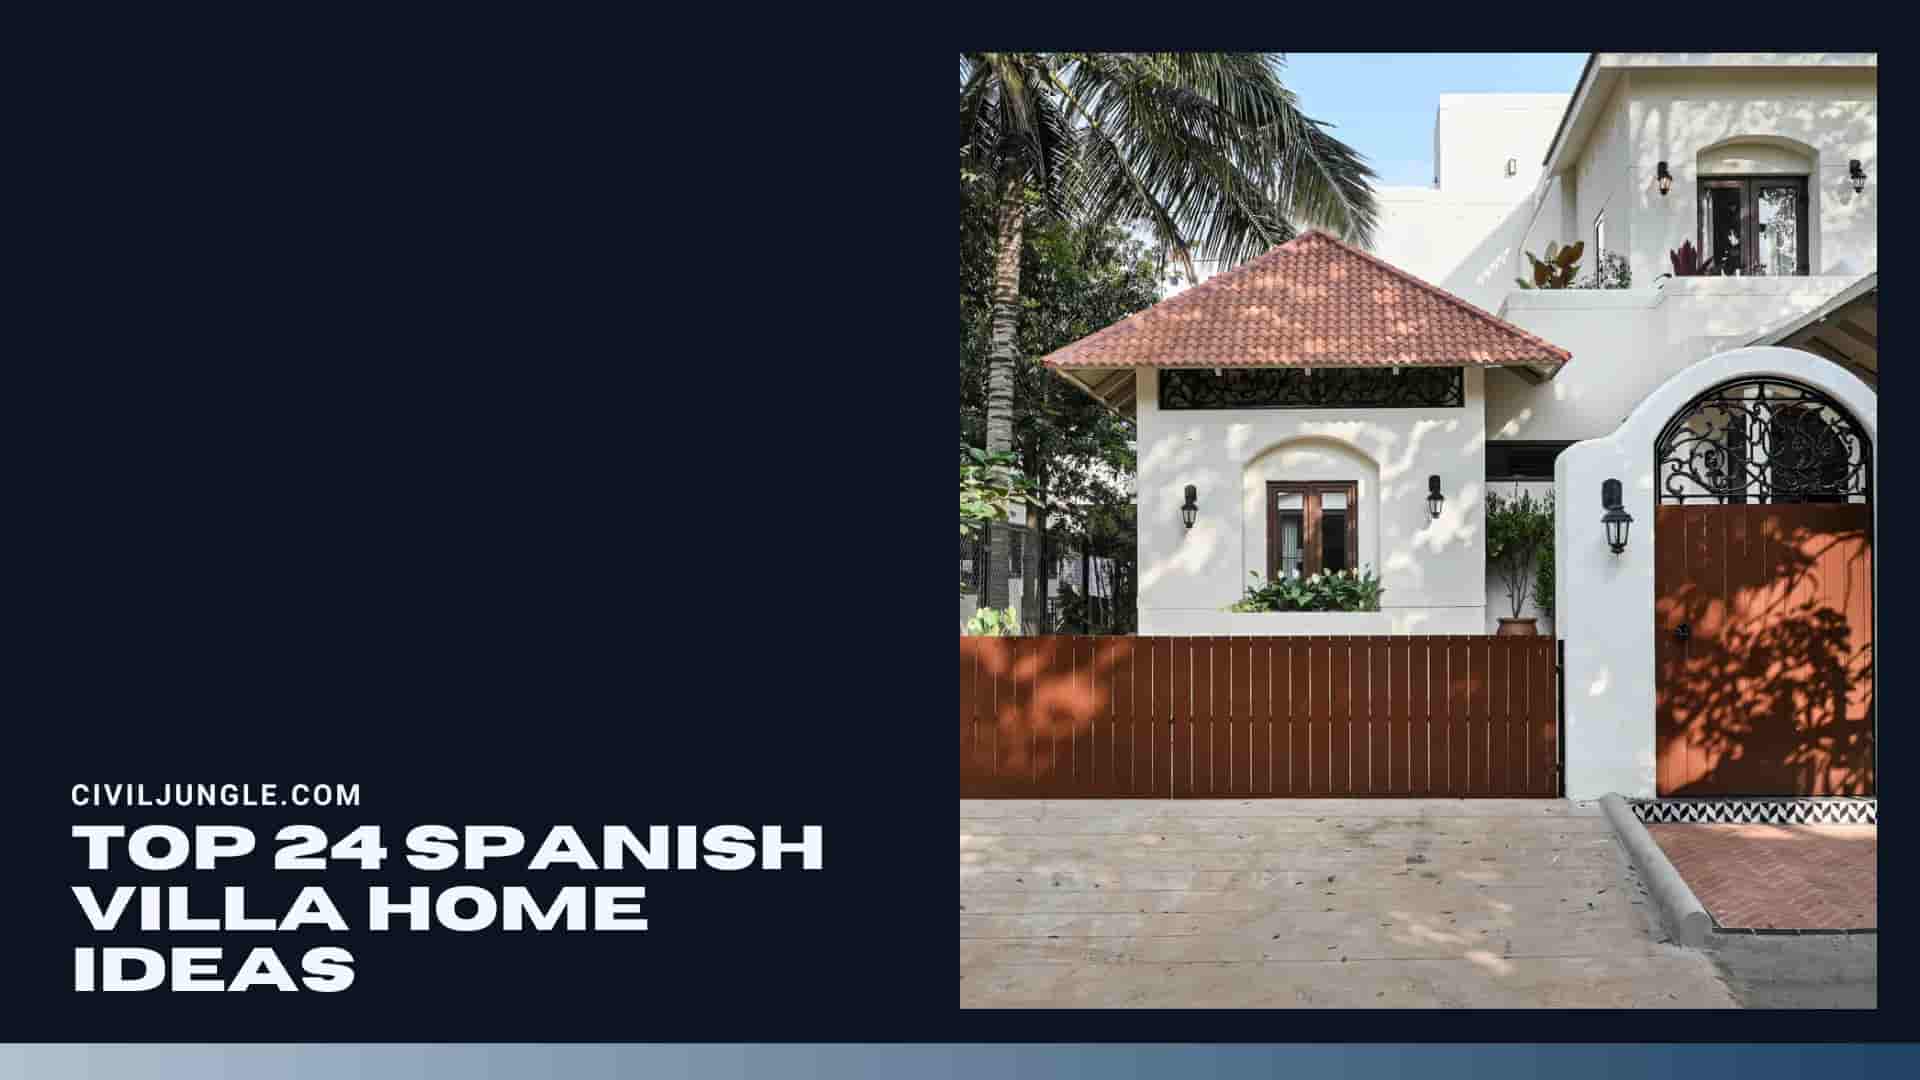 Top 24 de idei de case spaniole pentru vile